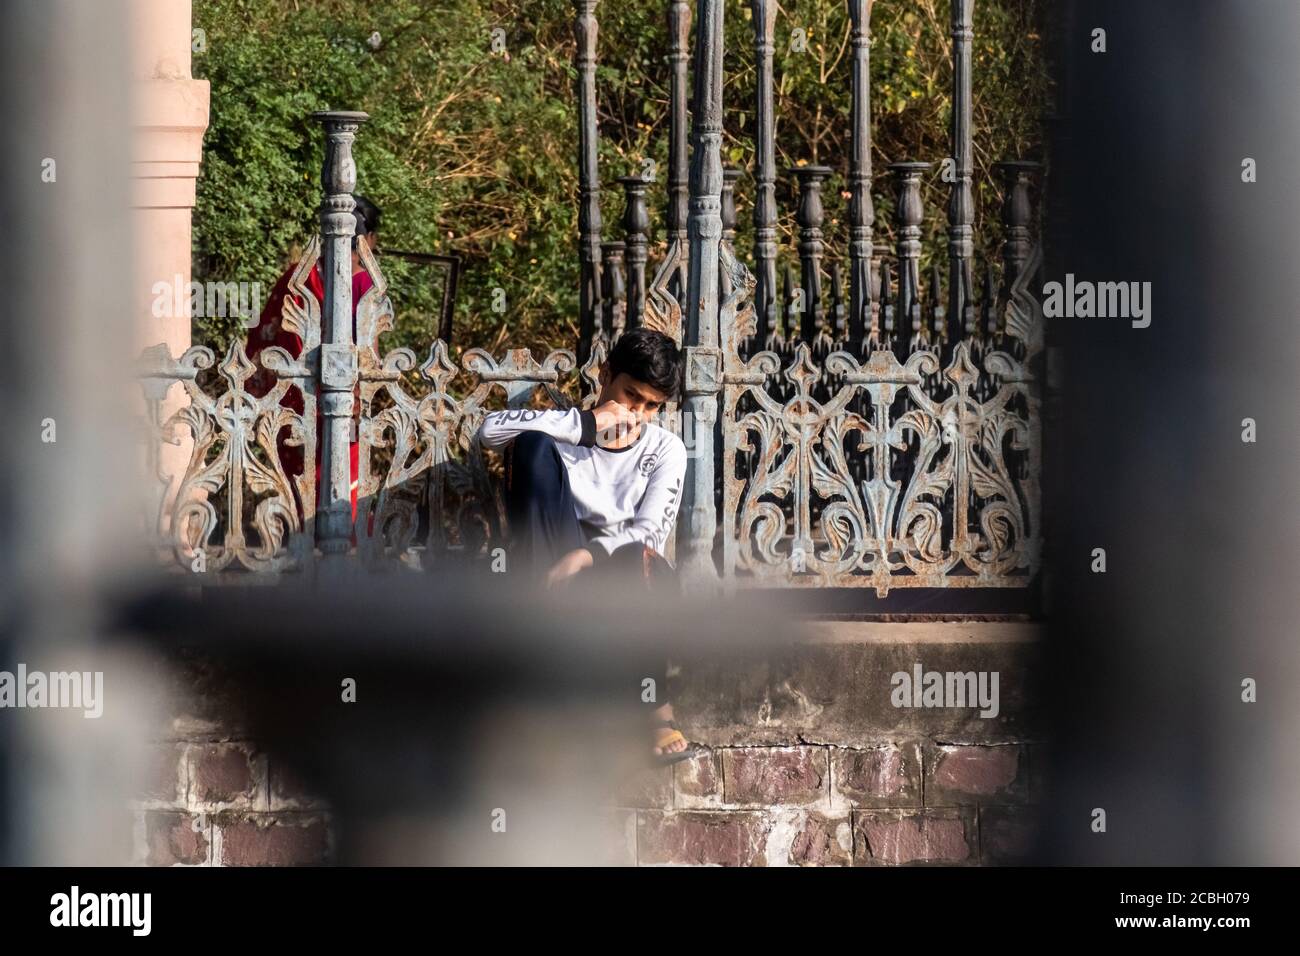 Bhopal, Madhya Pradesh, Indien - März 2019: Ein ehrliches Porträt eines jungen indischen Teenagers, der auf einer Wand sitzt und nachdenklich starrt. Stockfoto